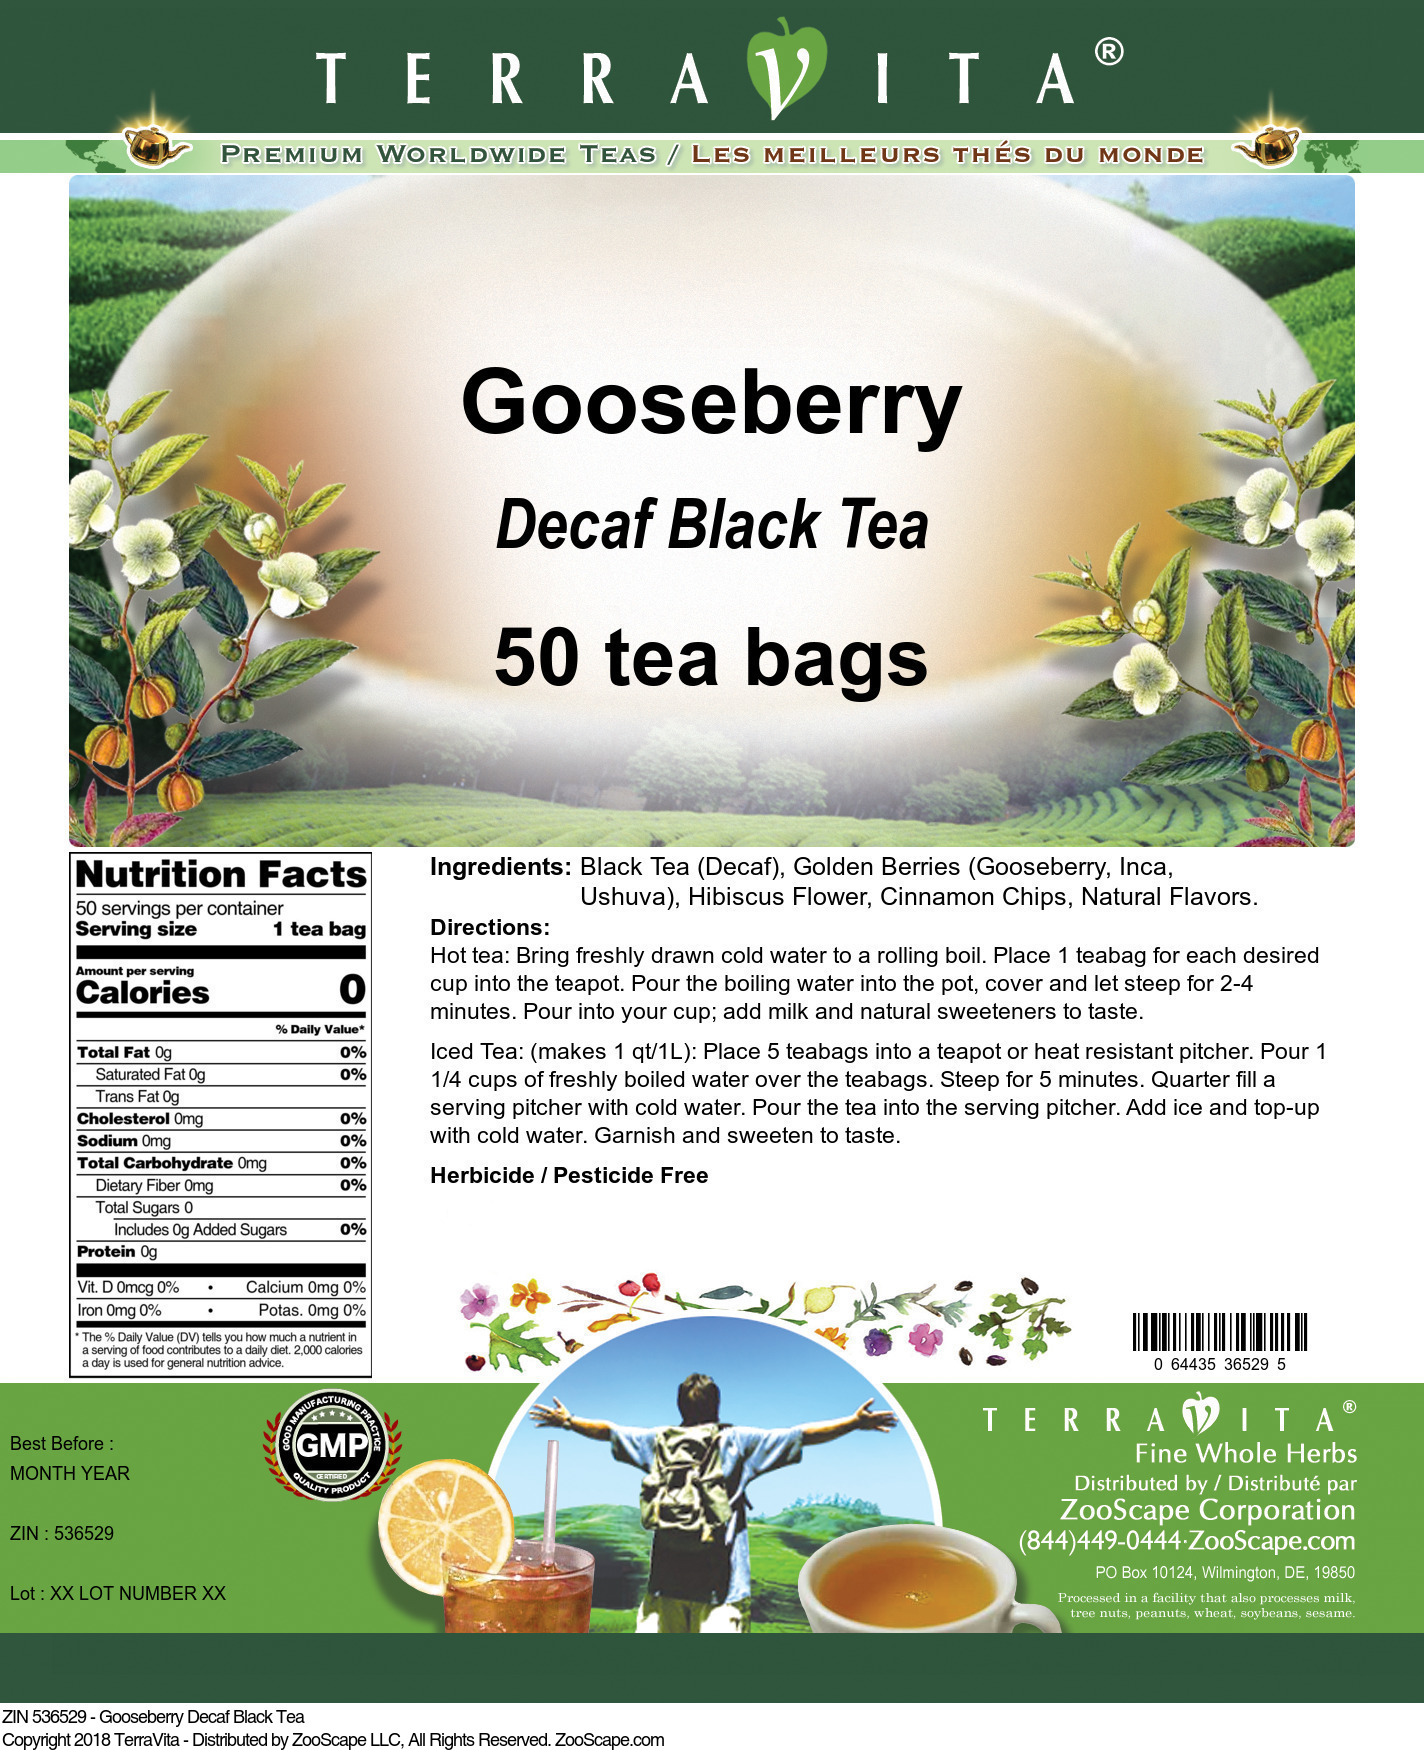 Gooseberry Decaf Black Tea - Label